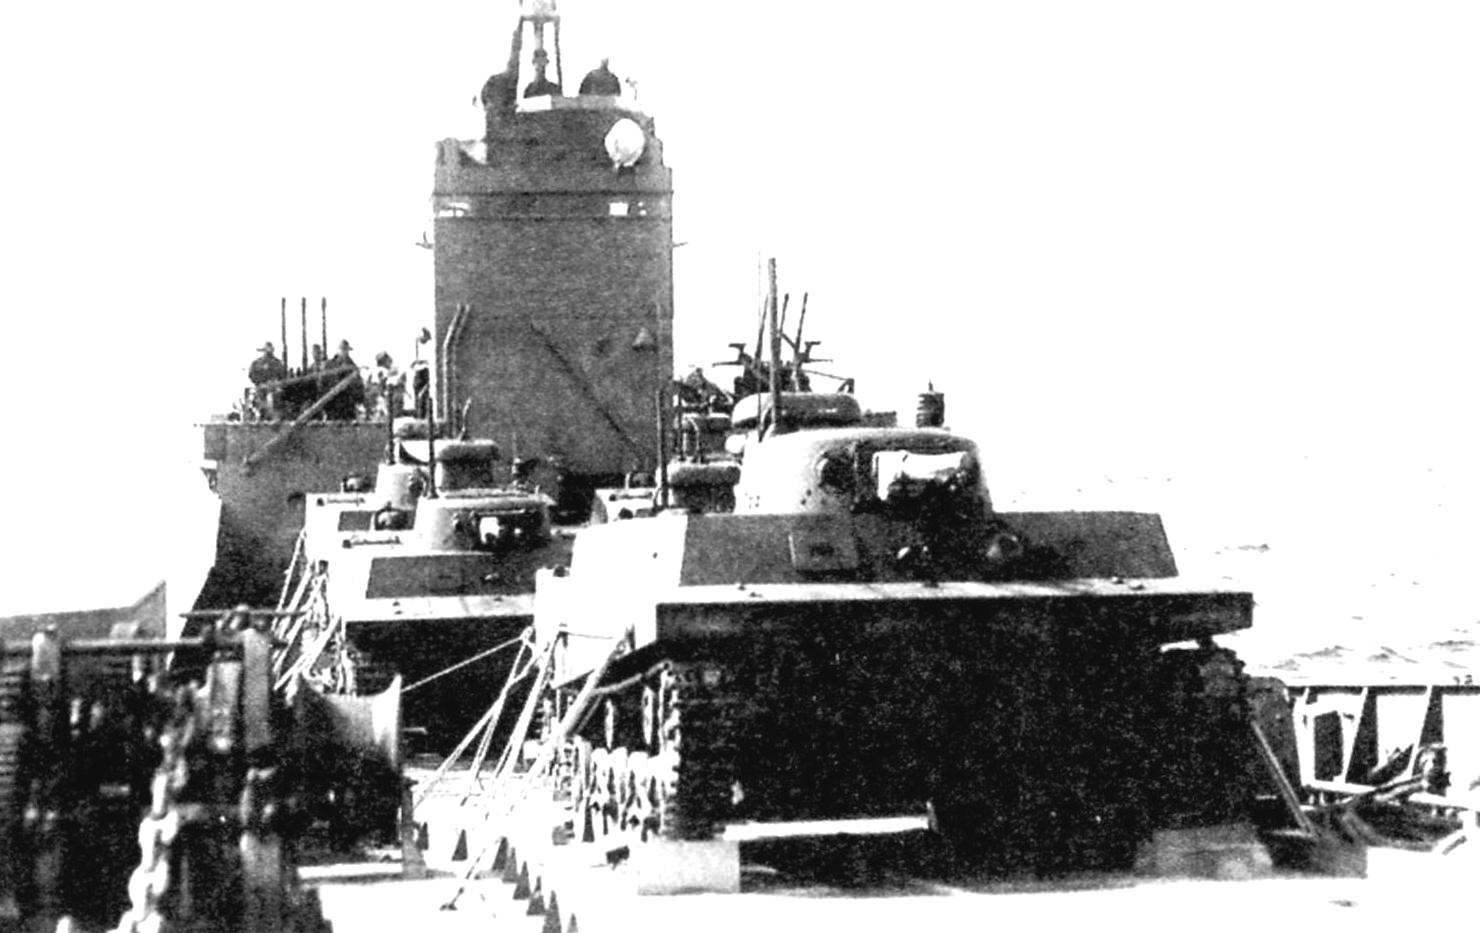 Японские плавающие танки «Ка-Ми» из 101-го специального морского десантного отряда со снятыми понтонами на борту транспорта. Понтоны в таких случаях укладывались на корме судна. Доставка десанта на остров Сайпан. Марианские о-ва, июнь 1944 г.